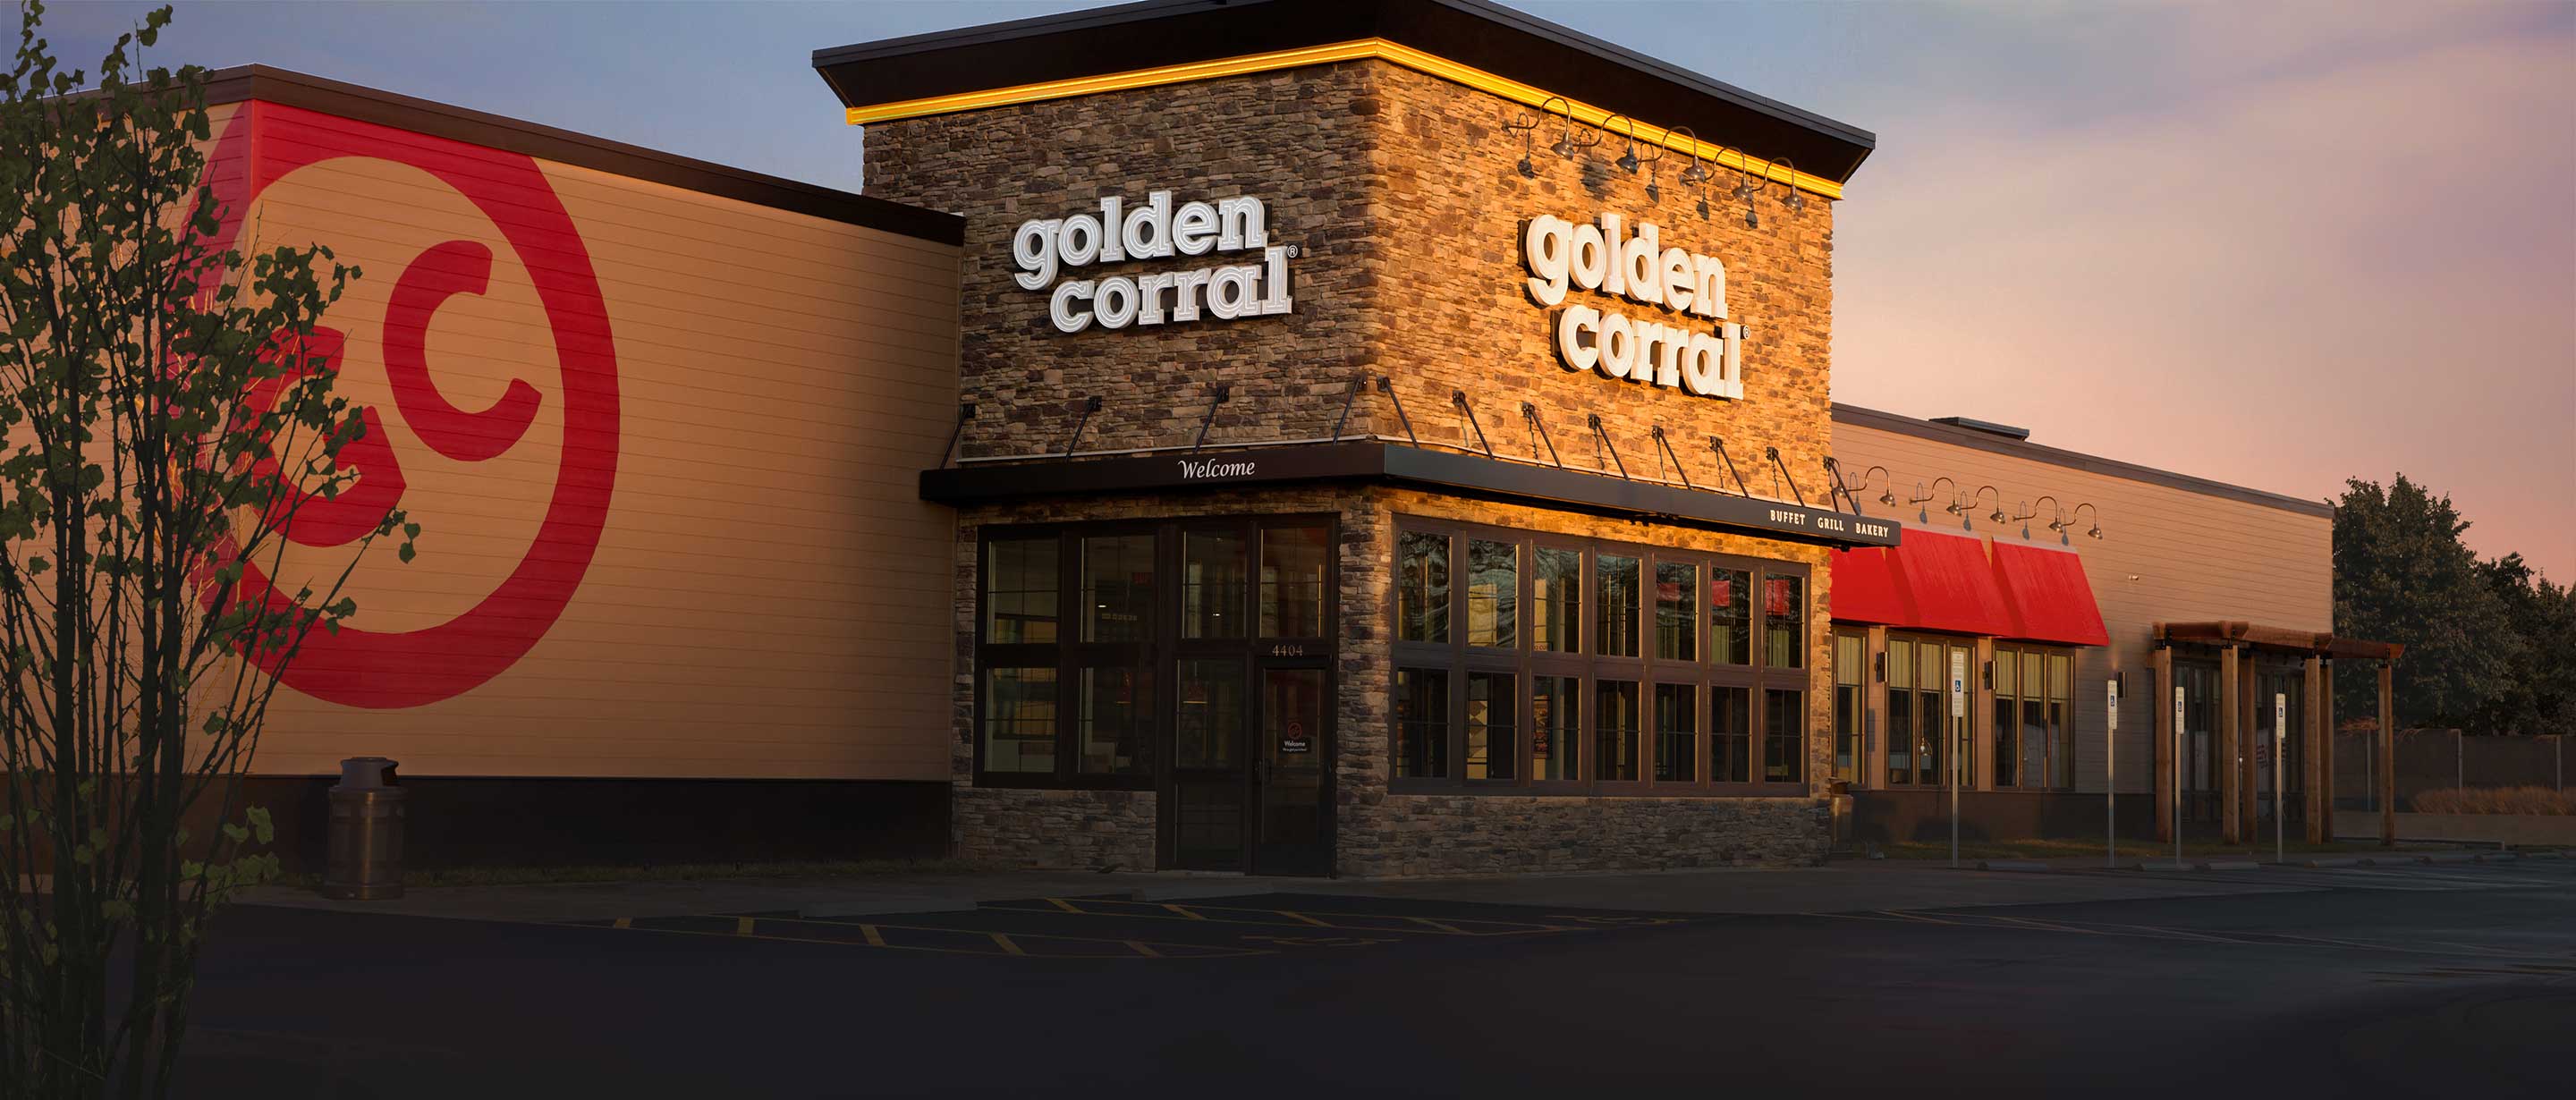 Contact Golden Corral Buffet Restaurant Endless Buffet Restaurant